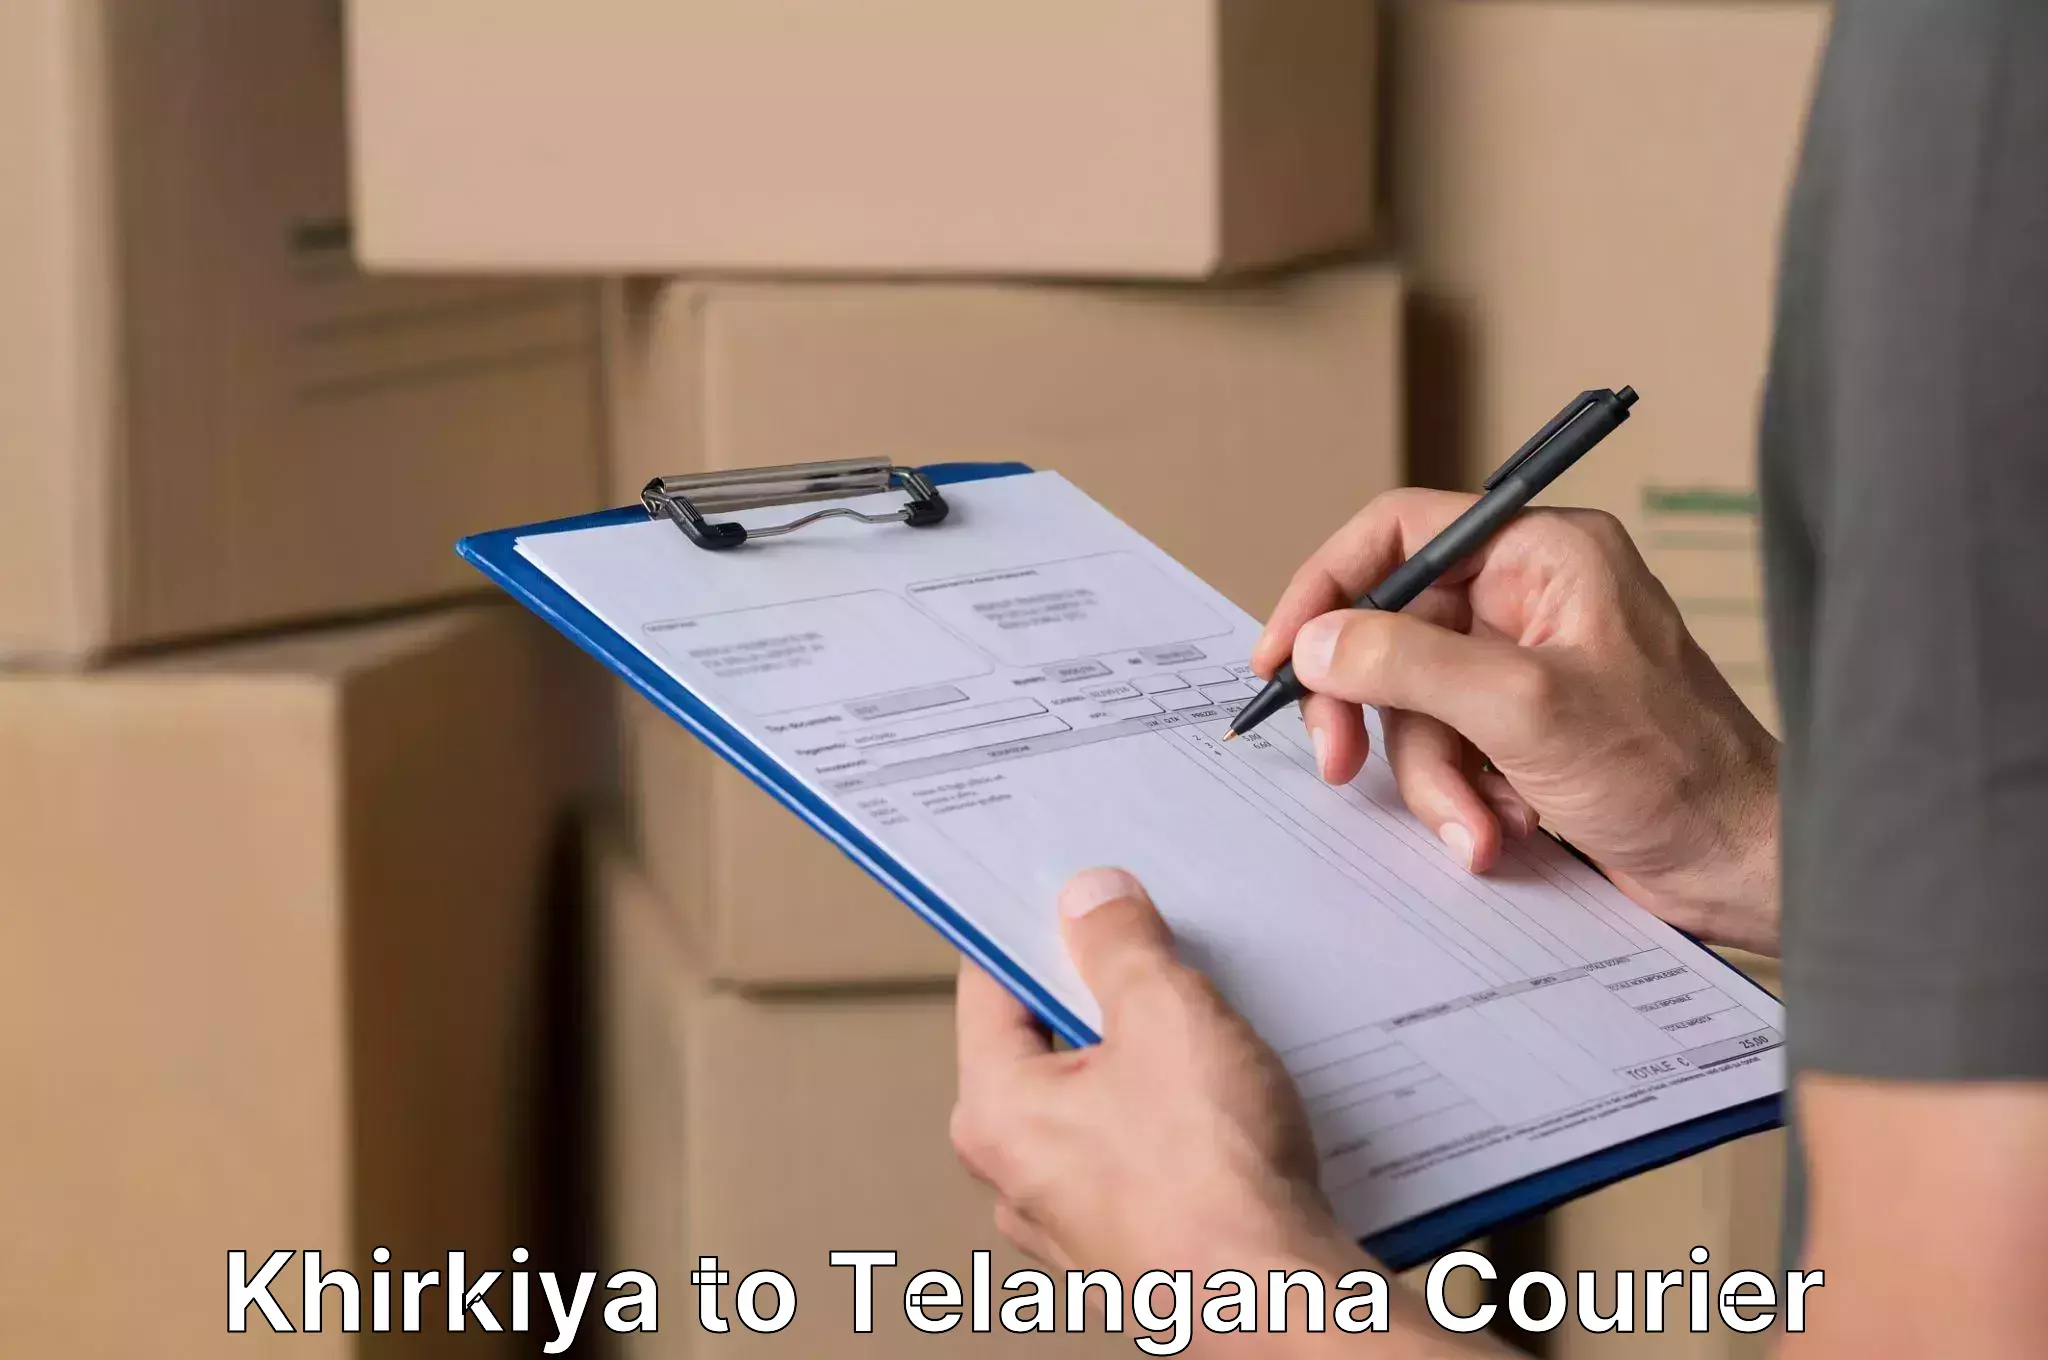 Furniture relocation services in Khirkiya to Telangana